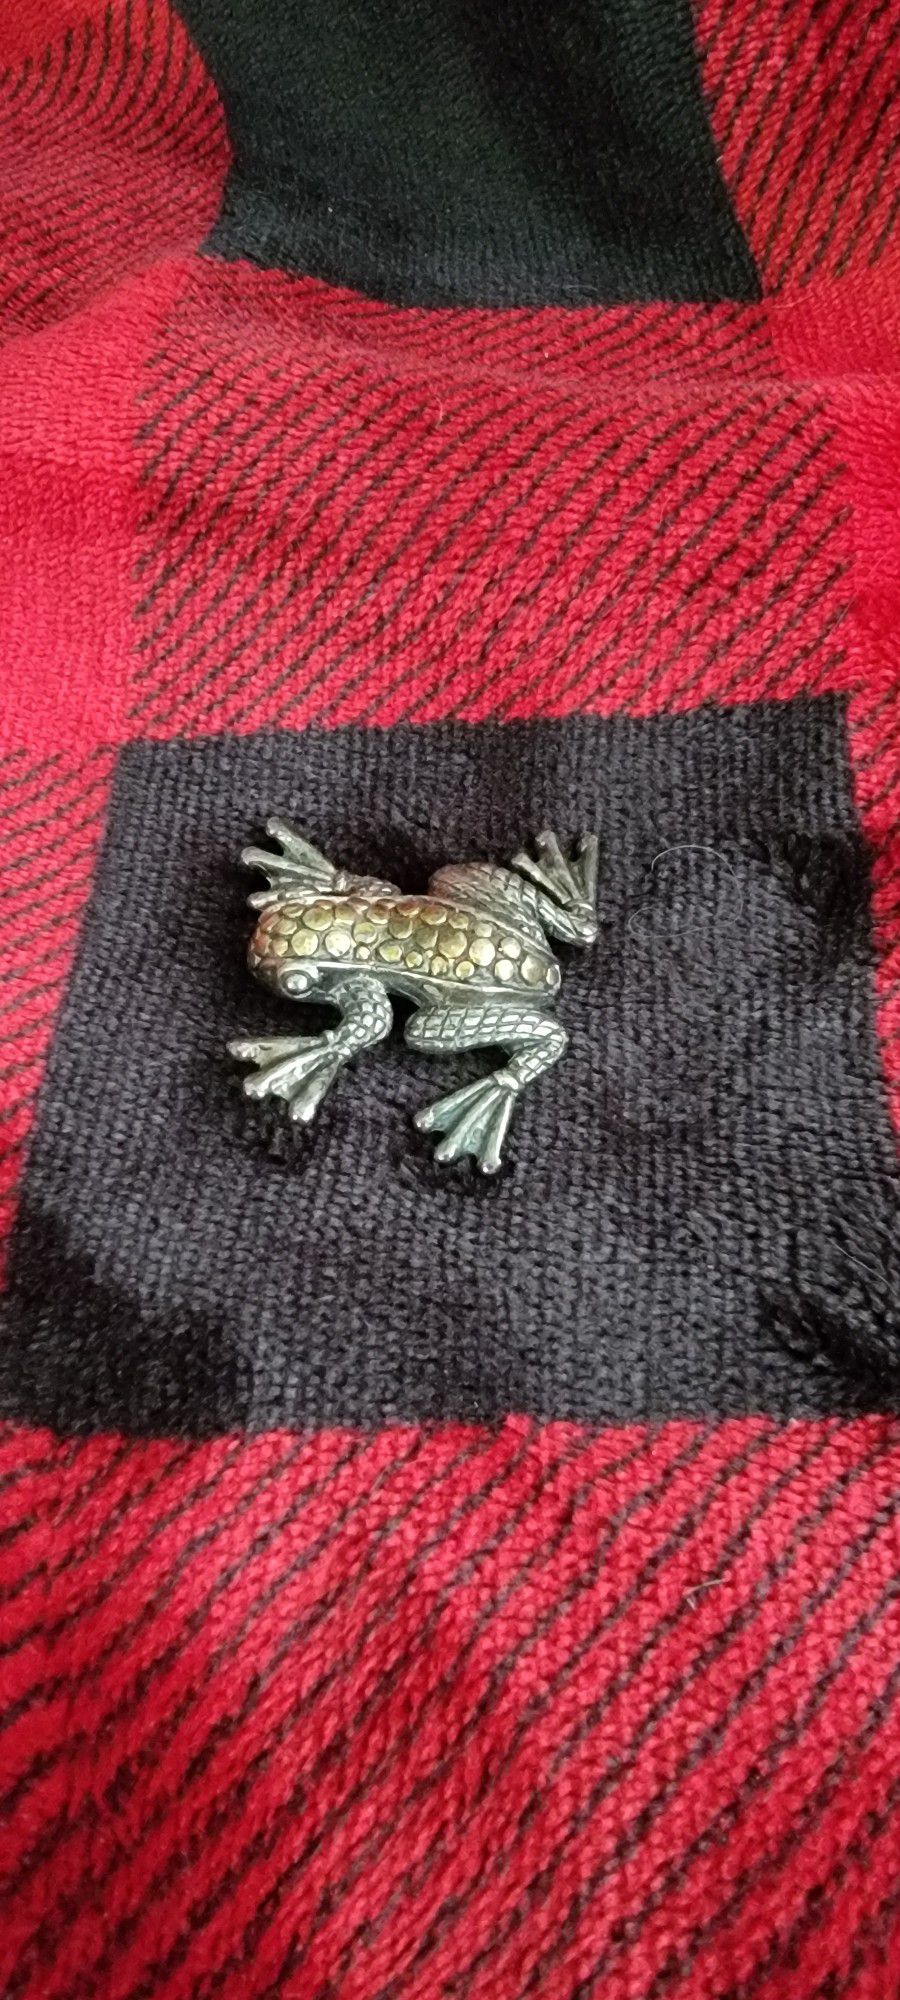 Vintage sterling silver frog brooch